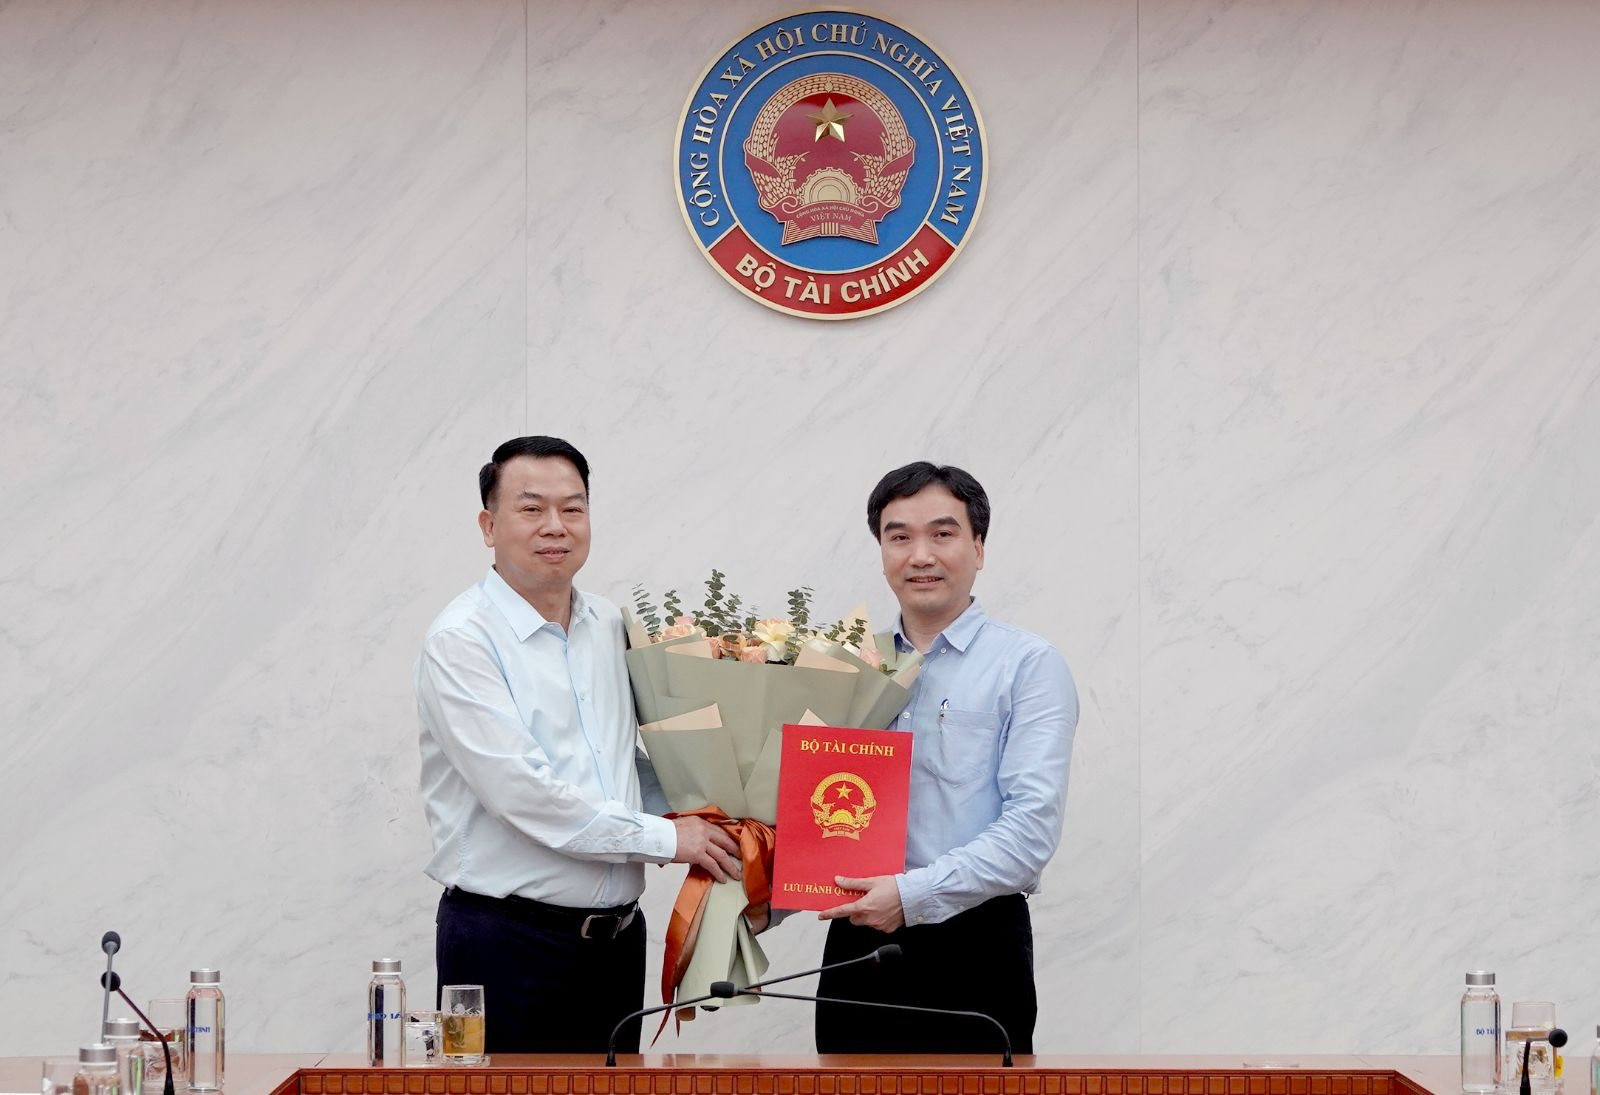 Bộ Tài chính bổ nhiệm ông Phạm Văn Bình làm Phó Cục trưởng Cục Quản lý giá